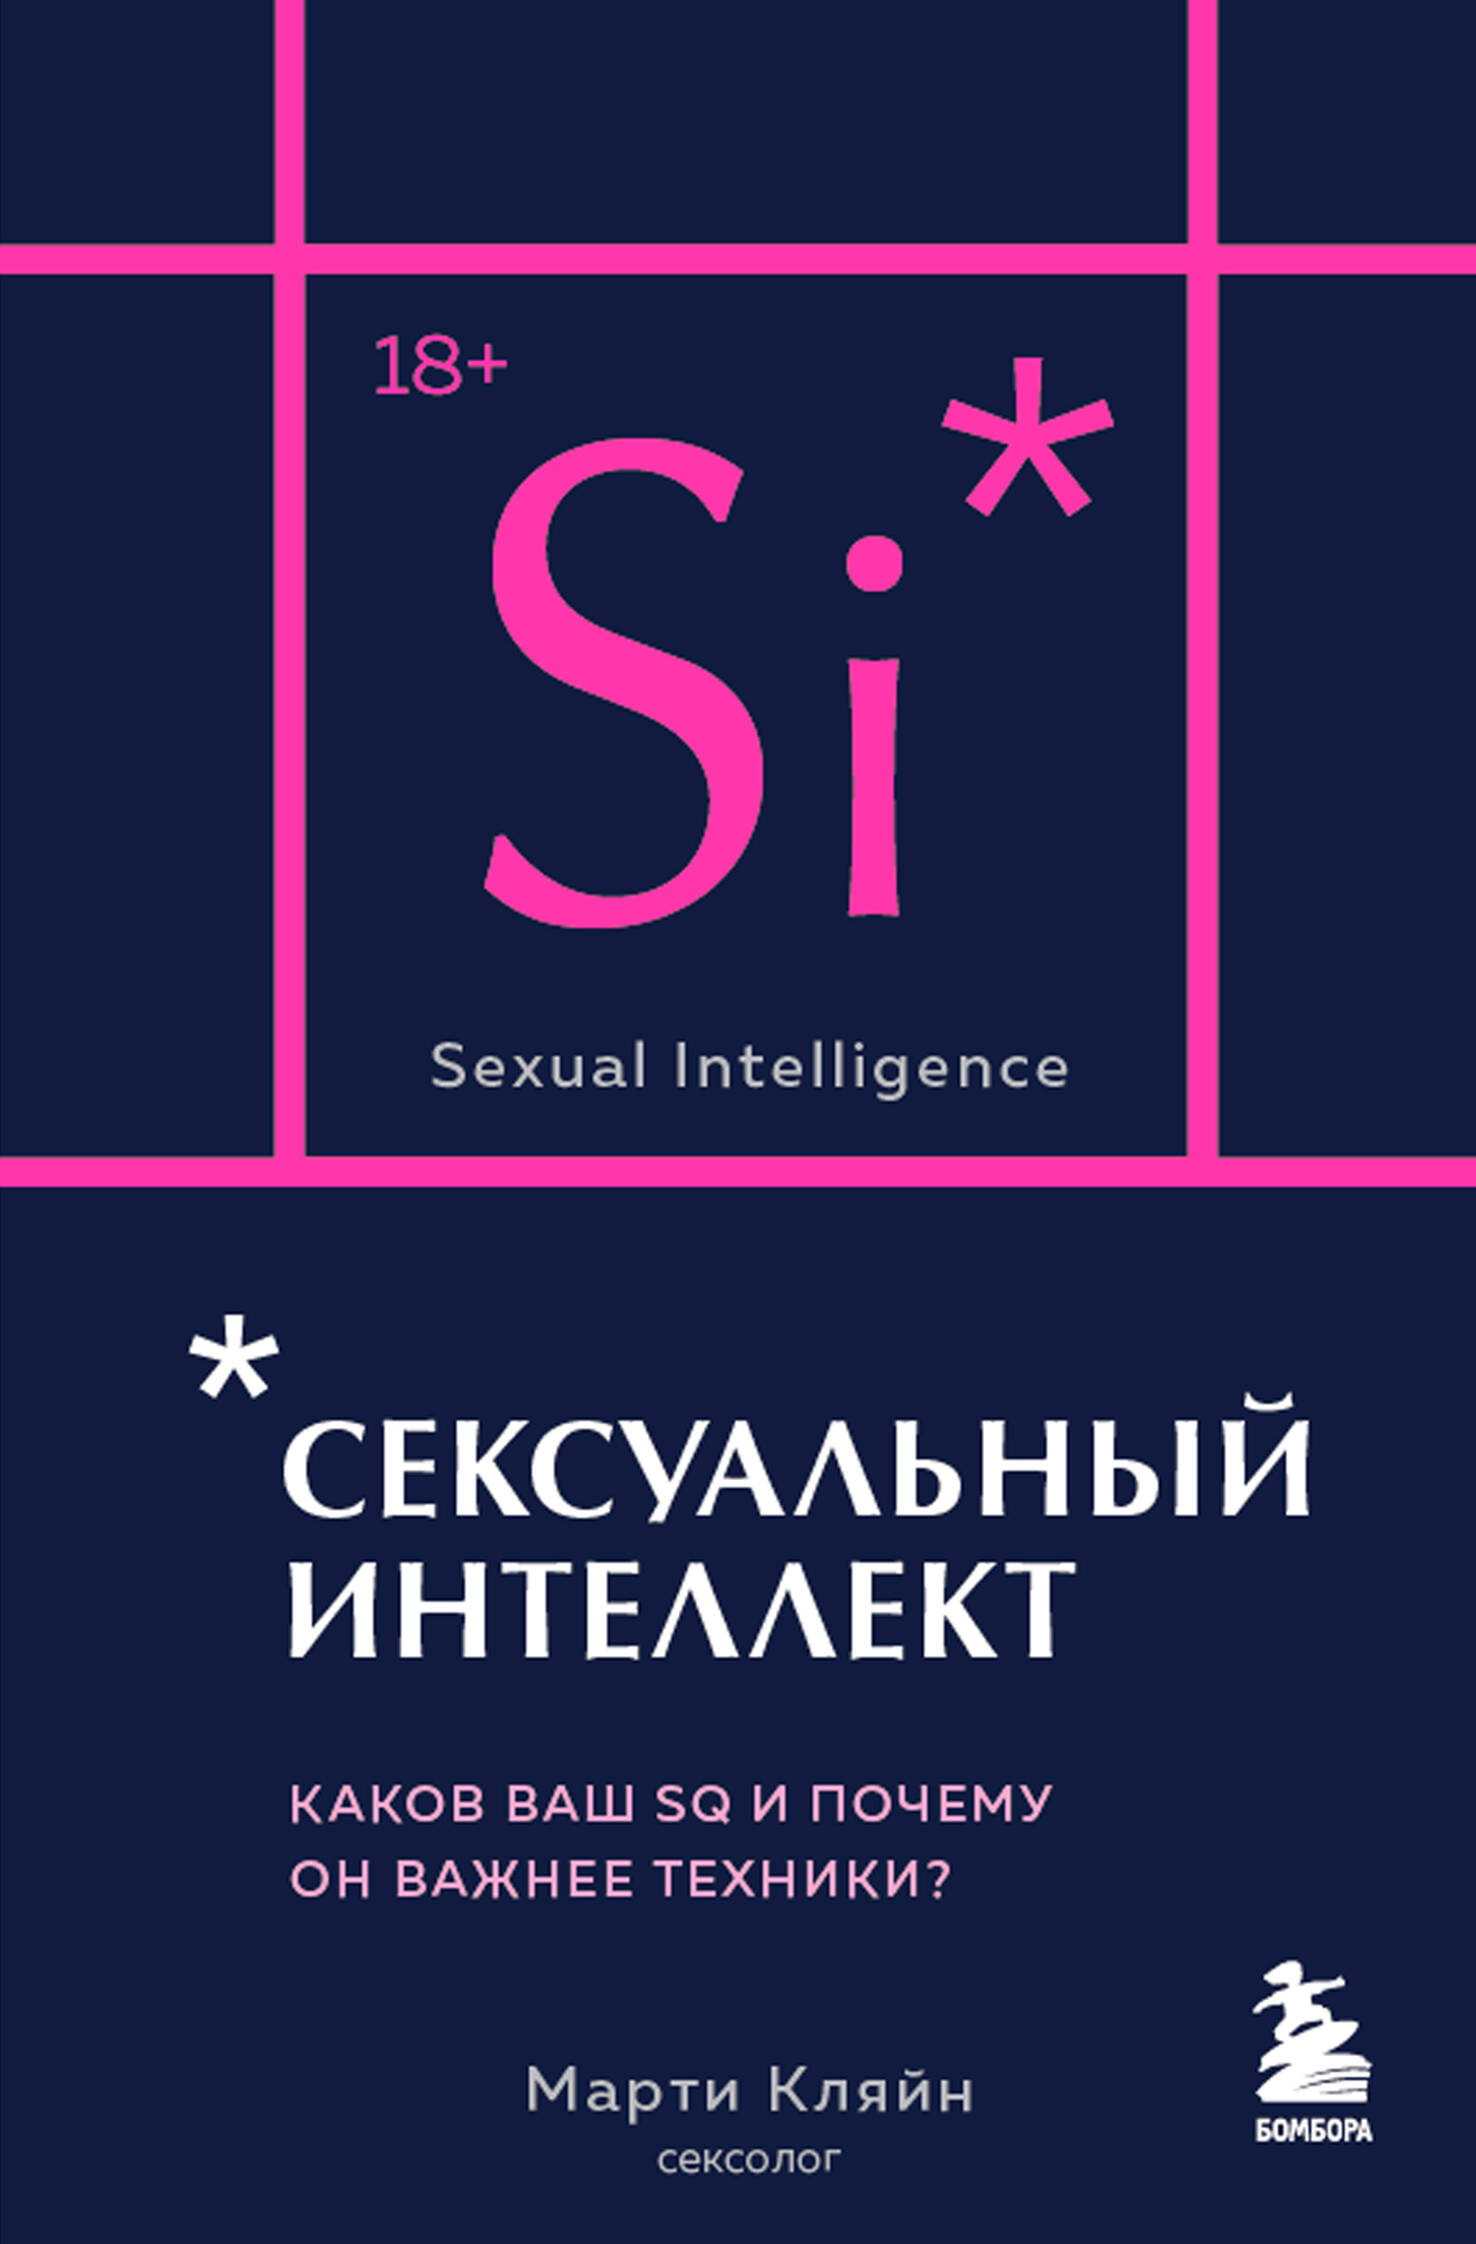 Кляйн Марти - Сексуальный интеллект. Каков ваш SQ и почему он важнее техники?